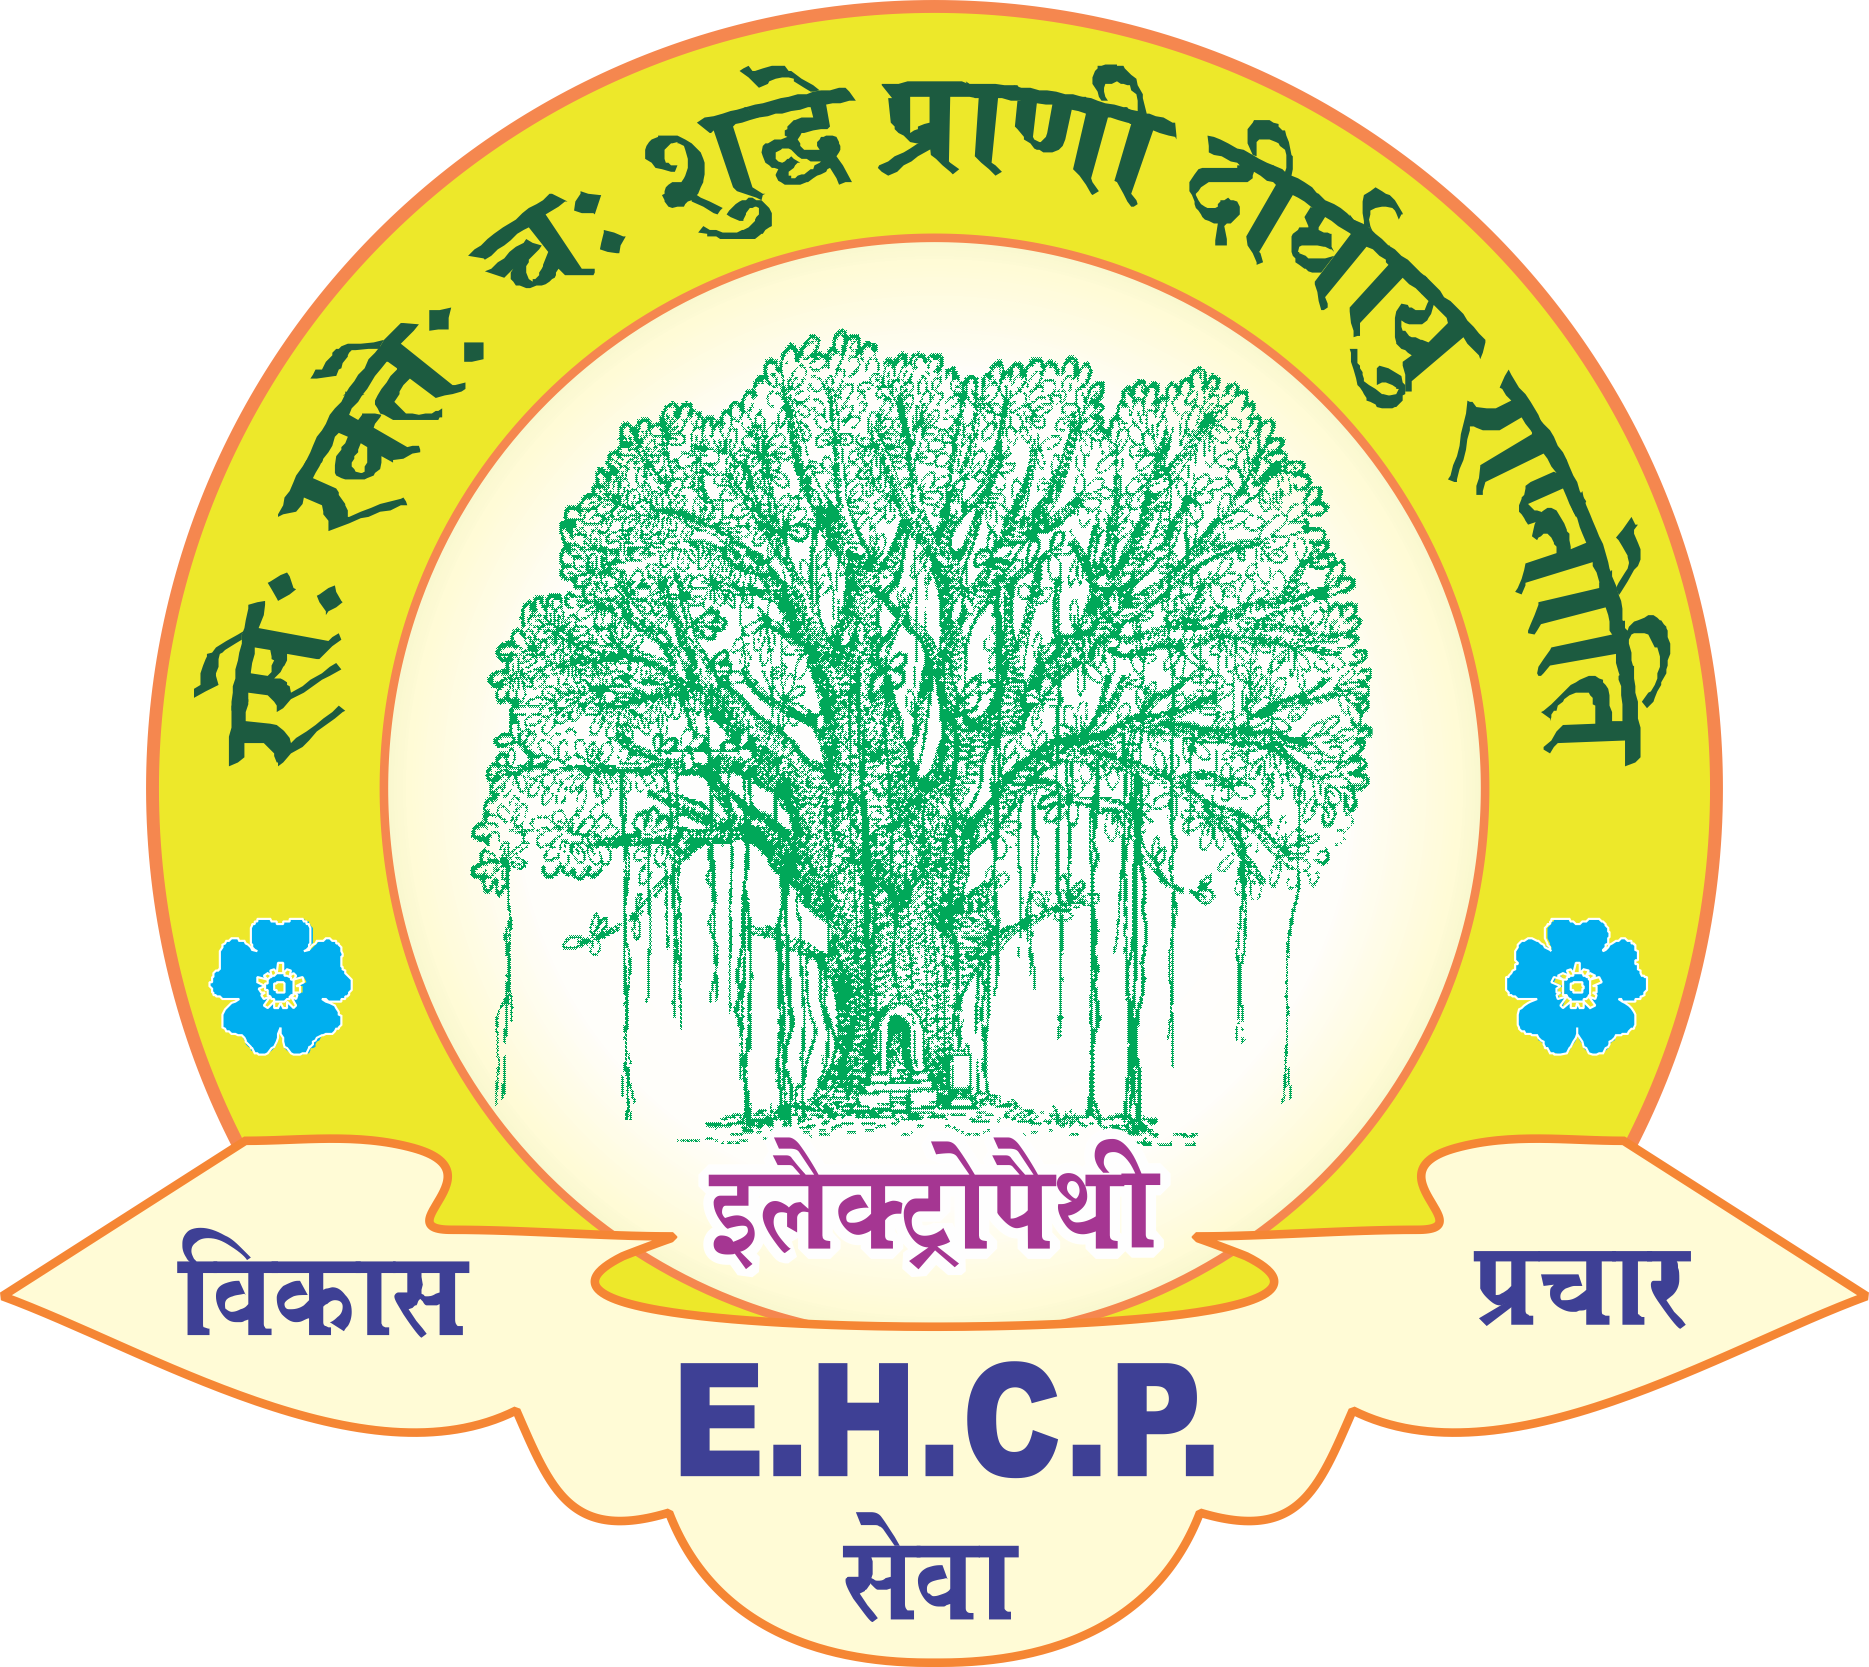 Electropathy EHCP